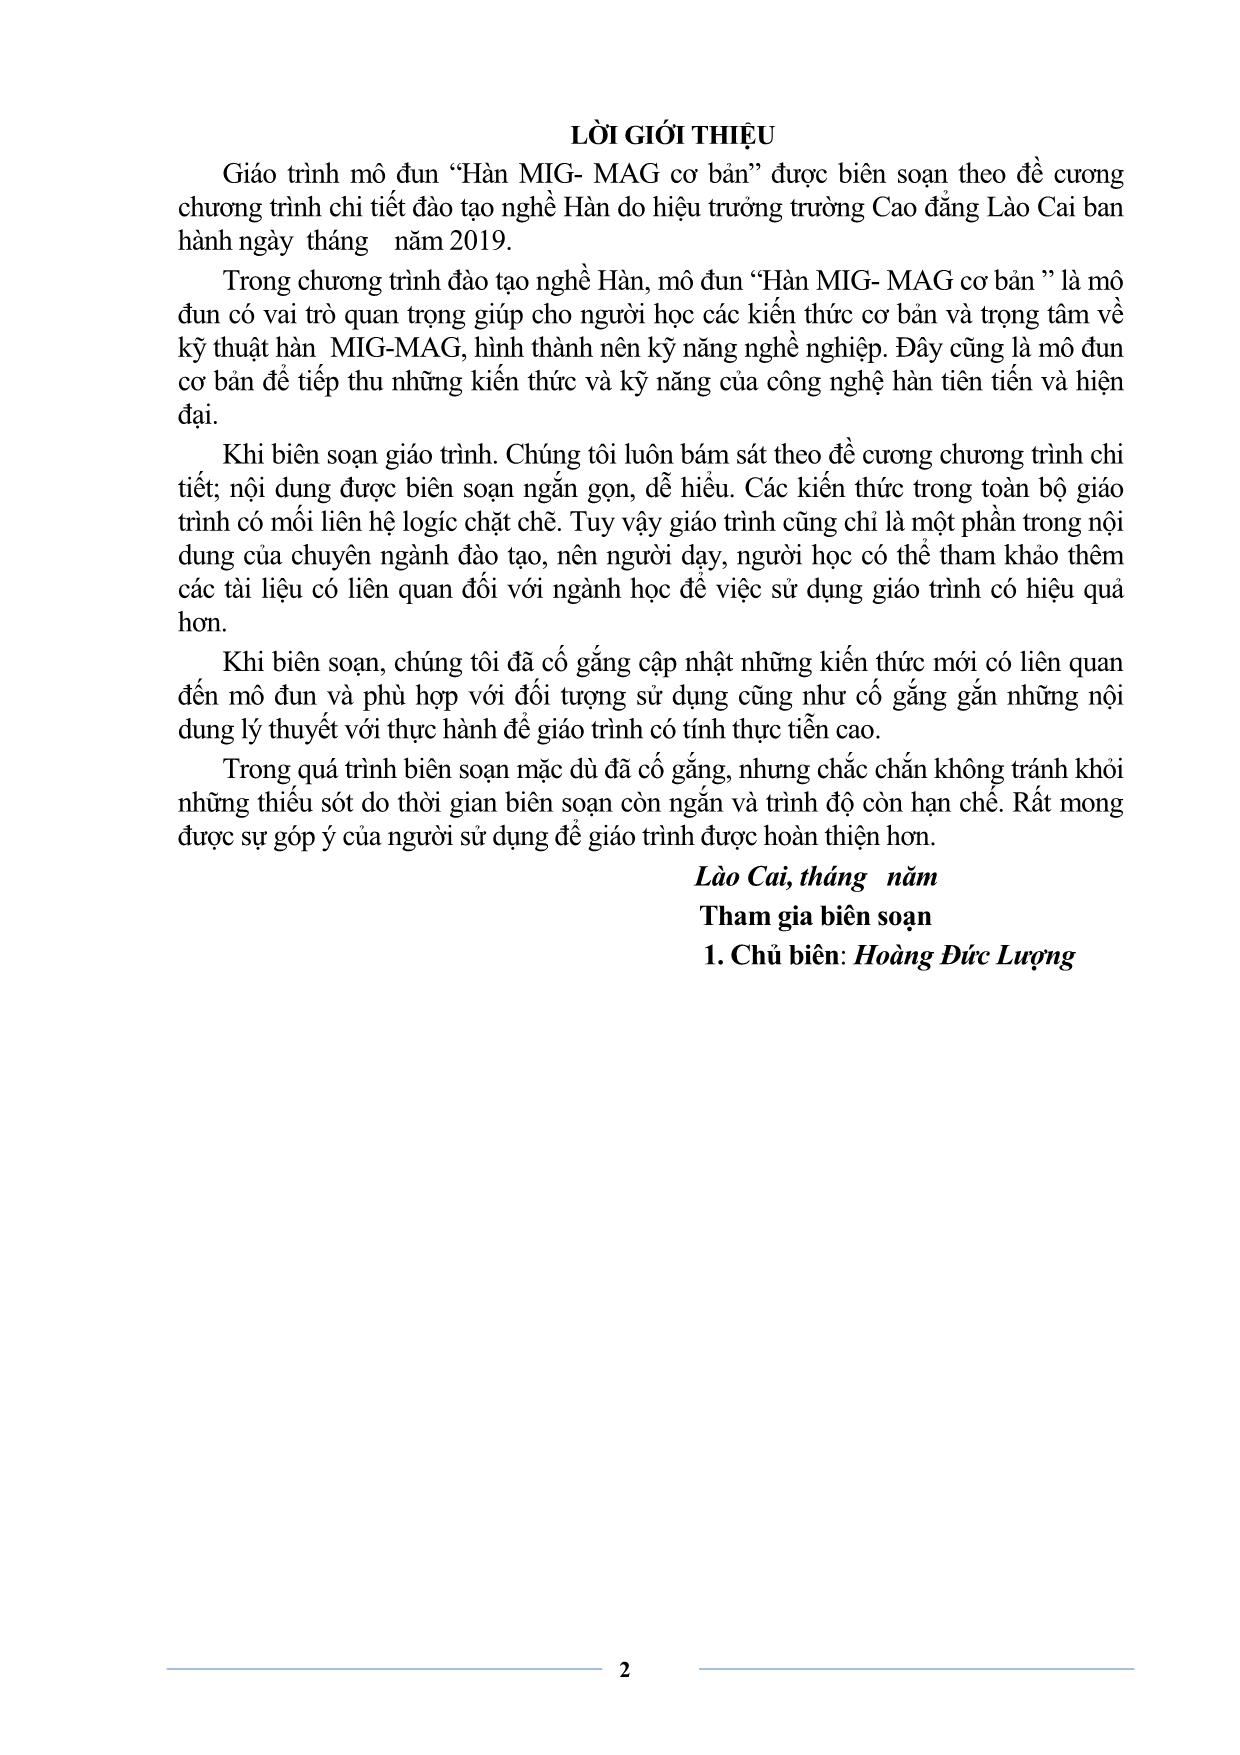 Giáo trình Hàn MIG-MAG cơ bản trang 4